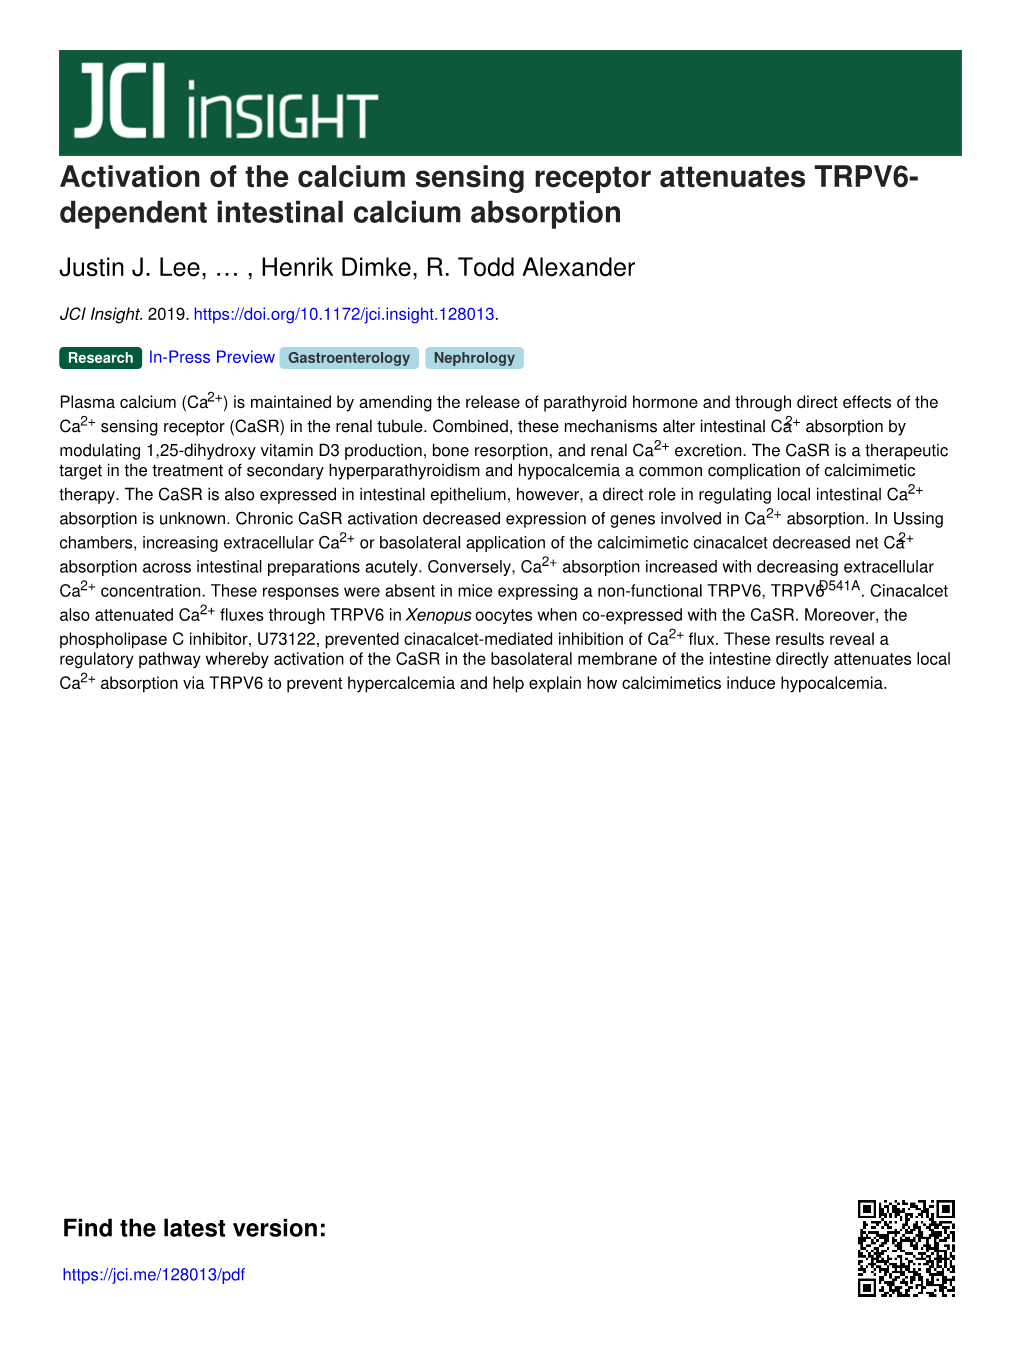 Activation of the Calcium Sensing Receptor Attenuates TRPV6- Dependent Intestinal Calcium Absorption